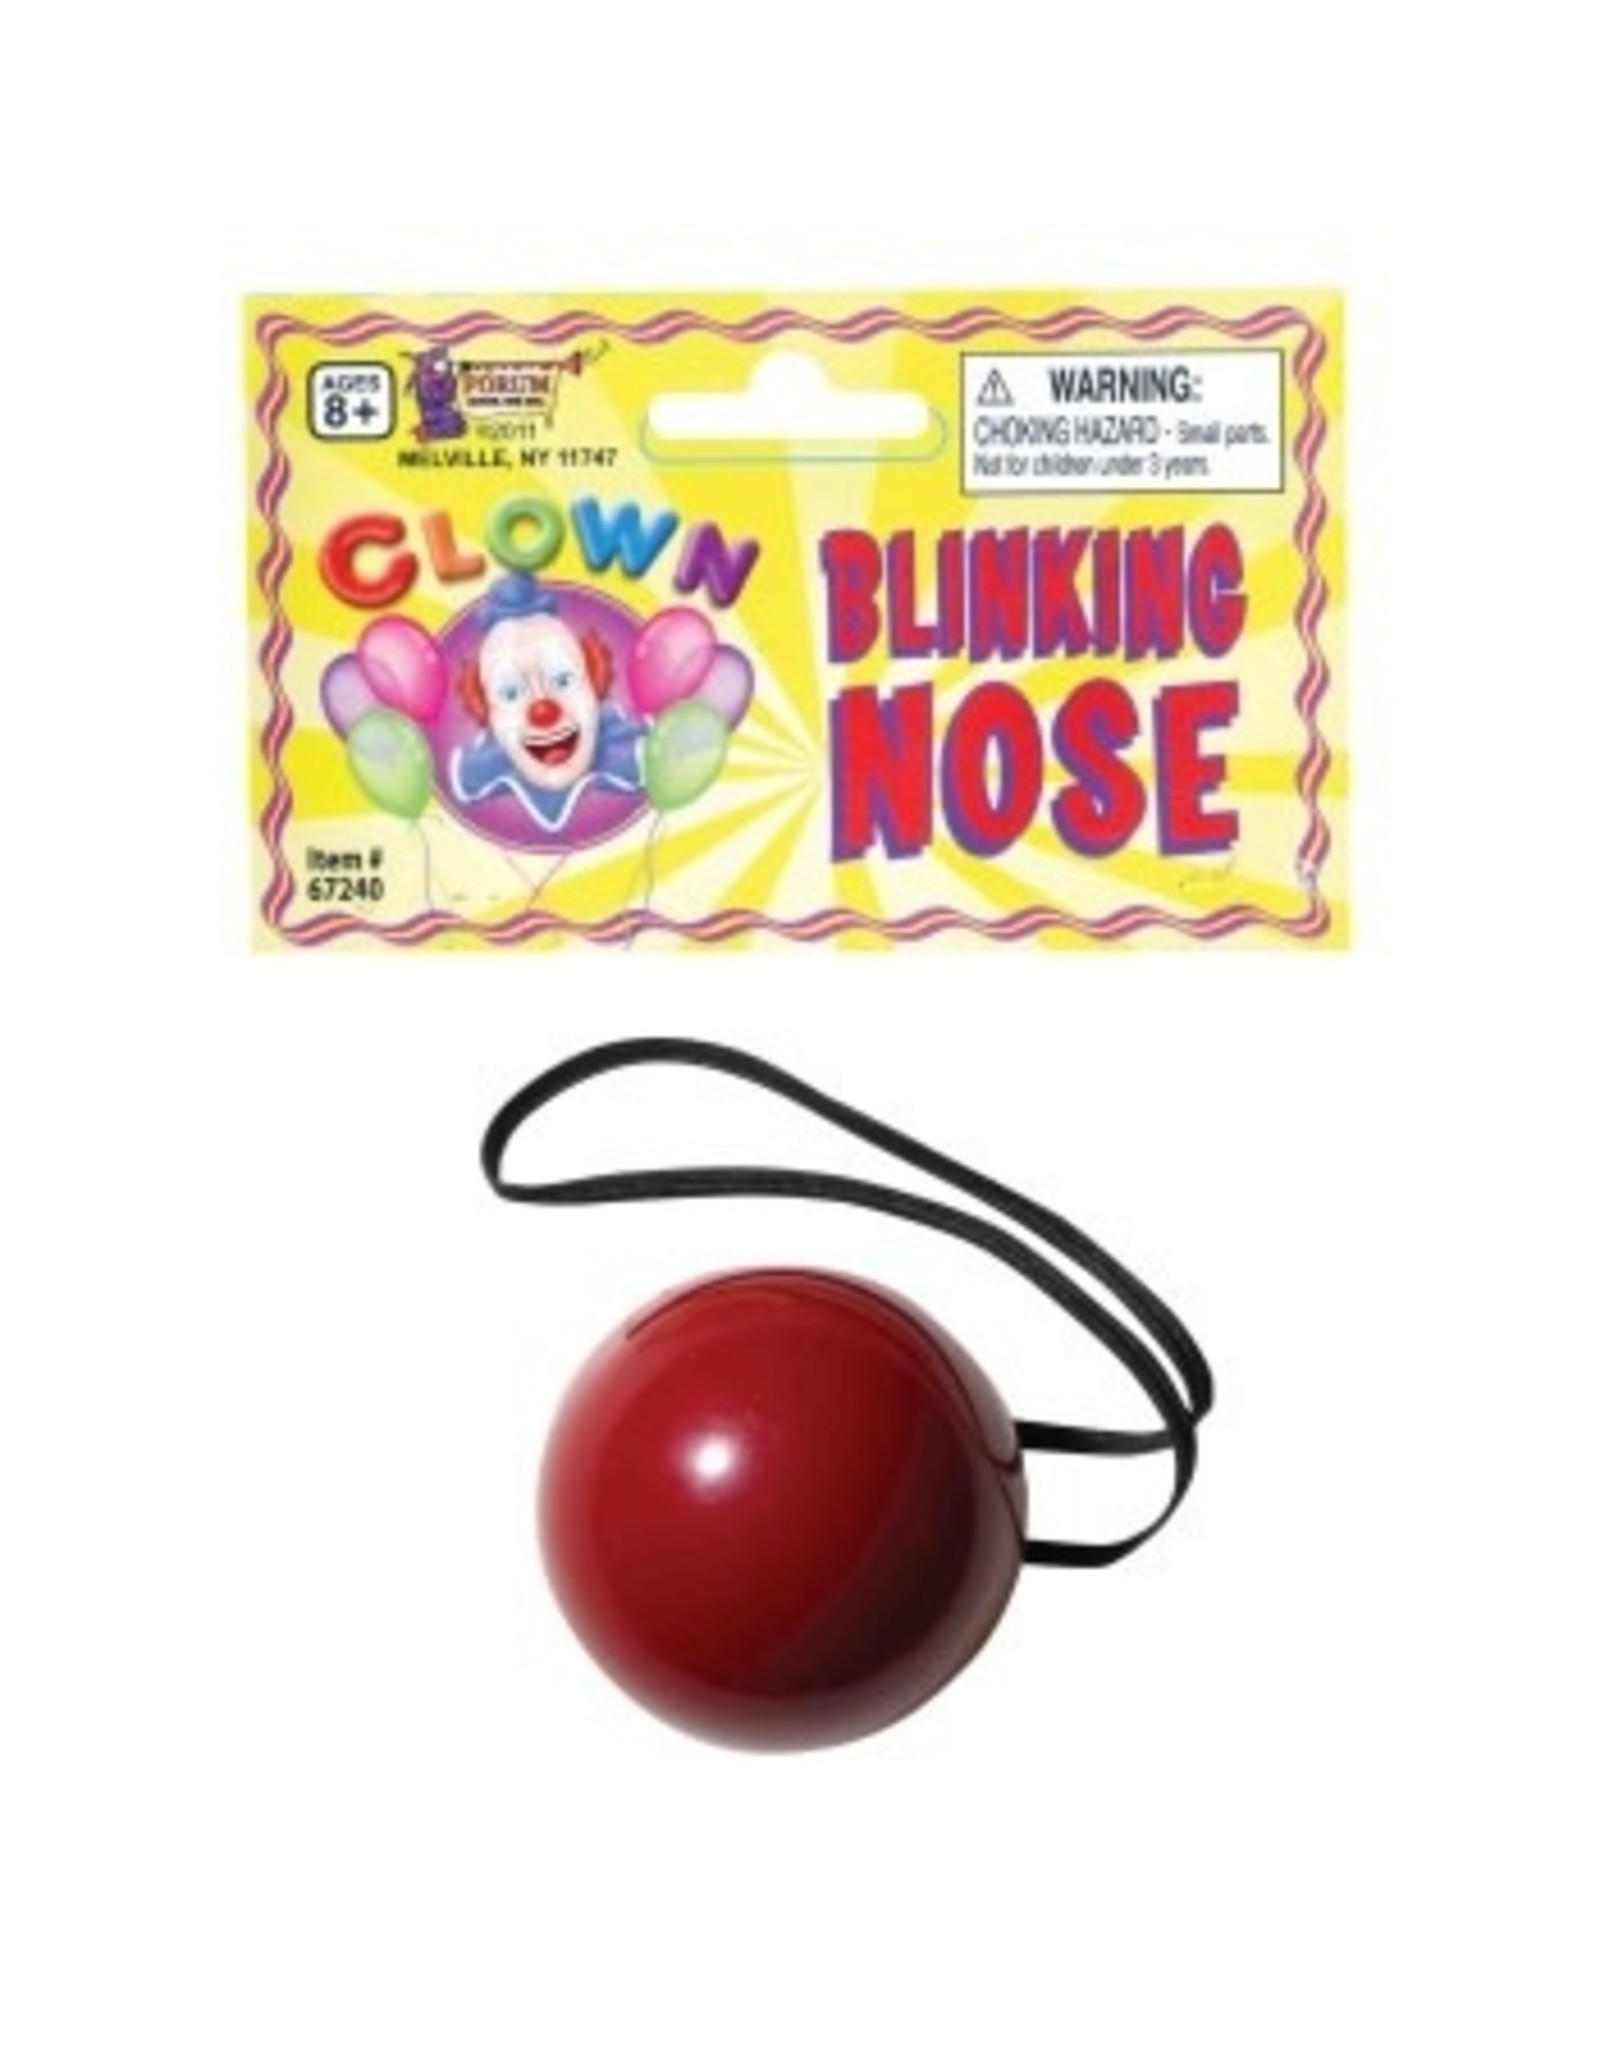 Forum Novelties Inc. Blinking Clown Nose